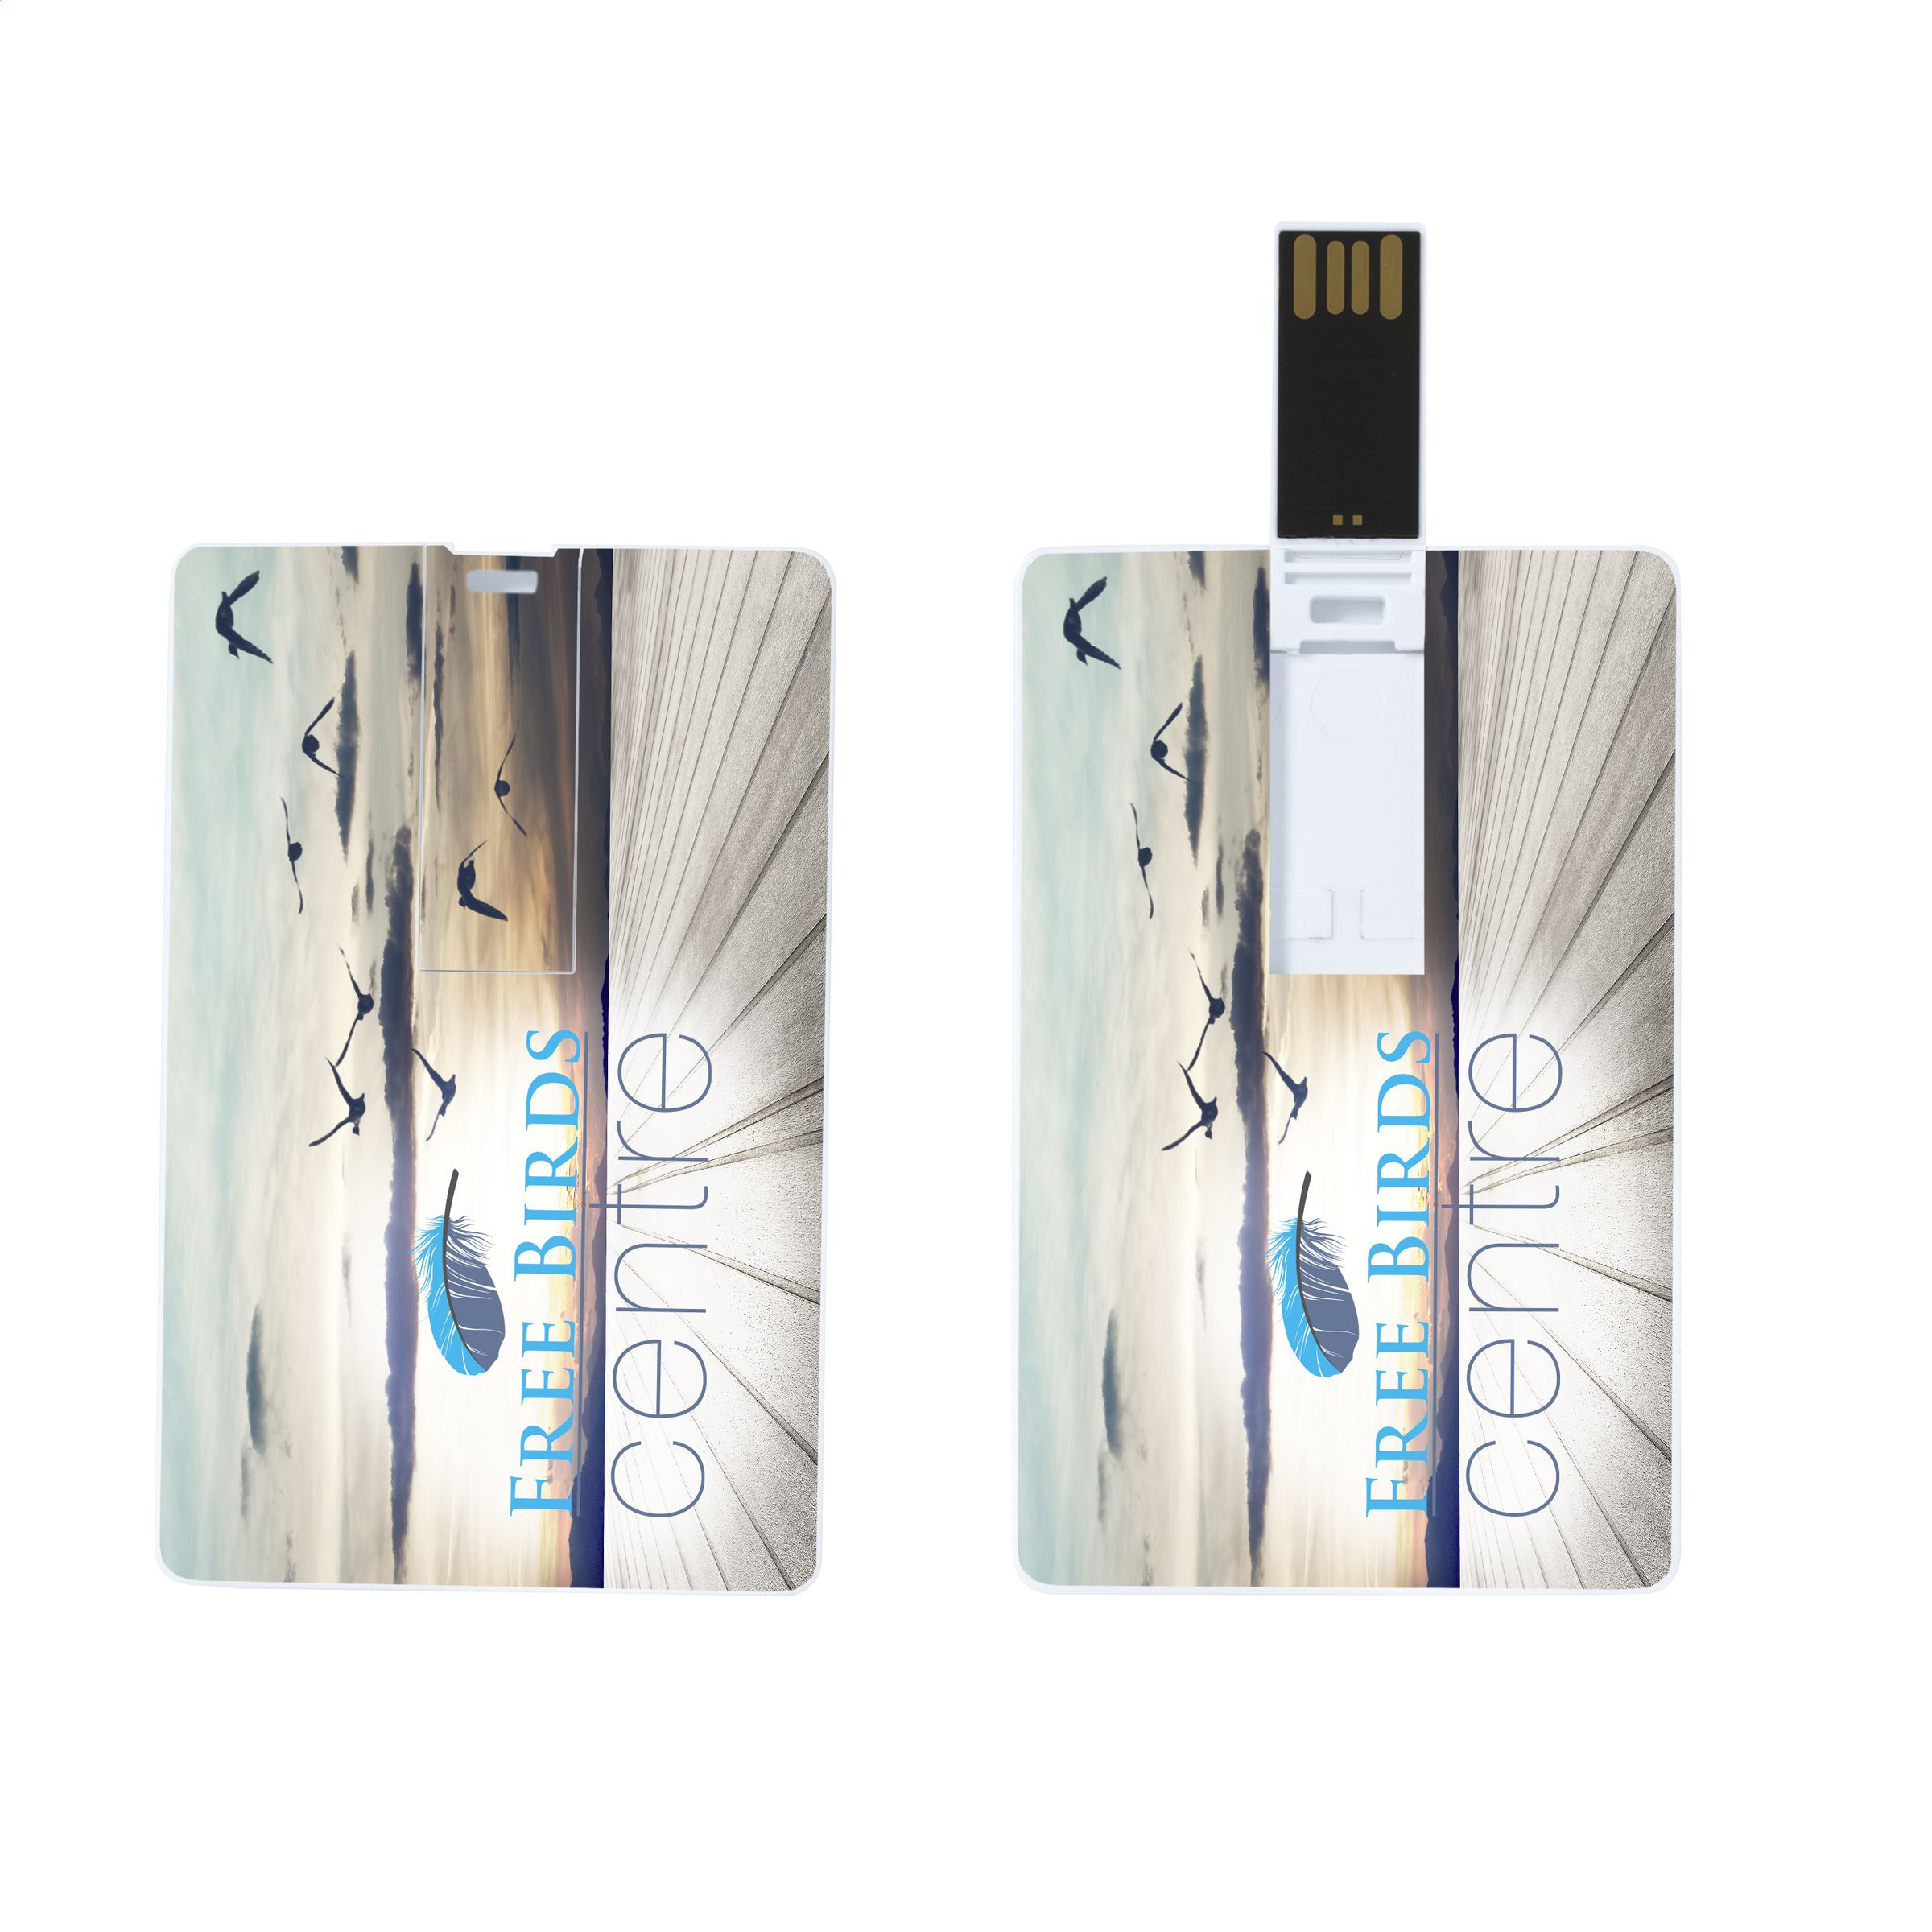 SlimCard USB 2.0 - Holme Chapel - Belper